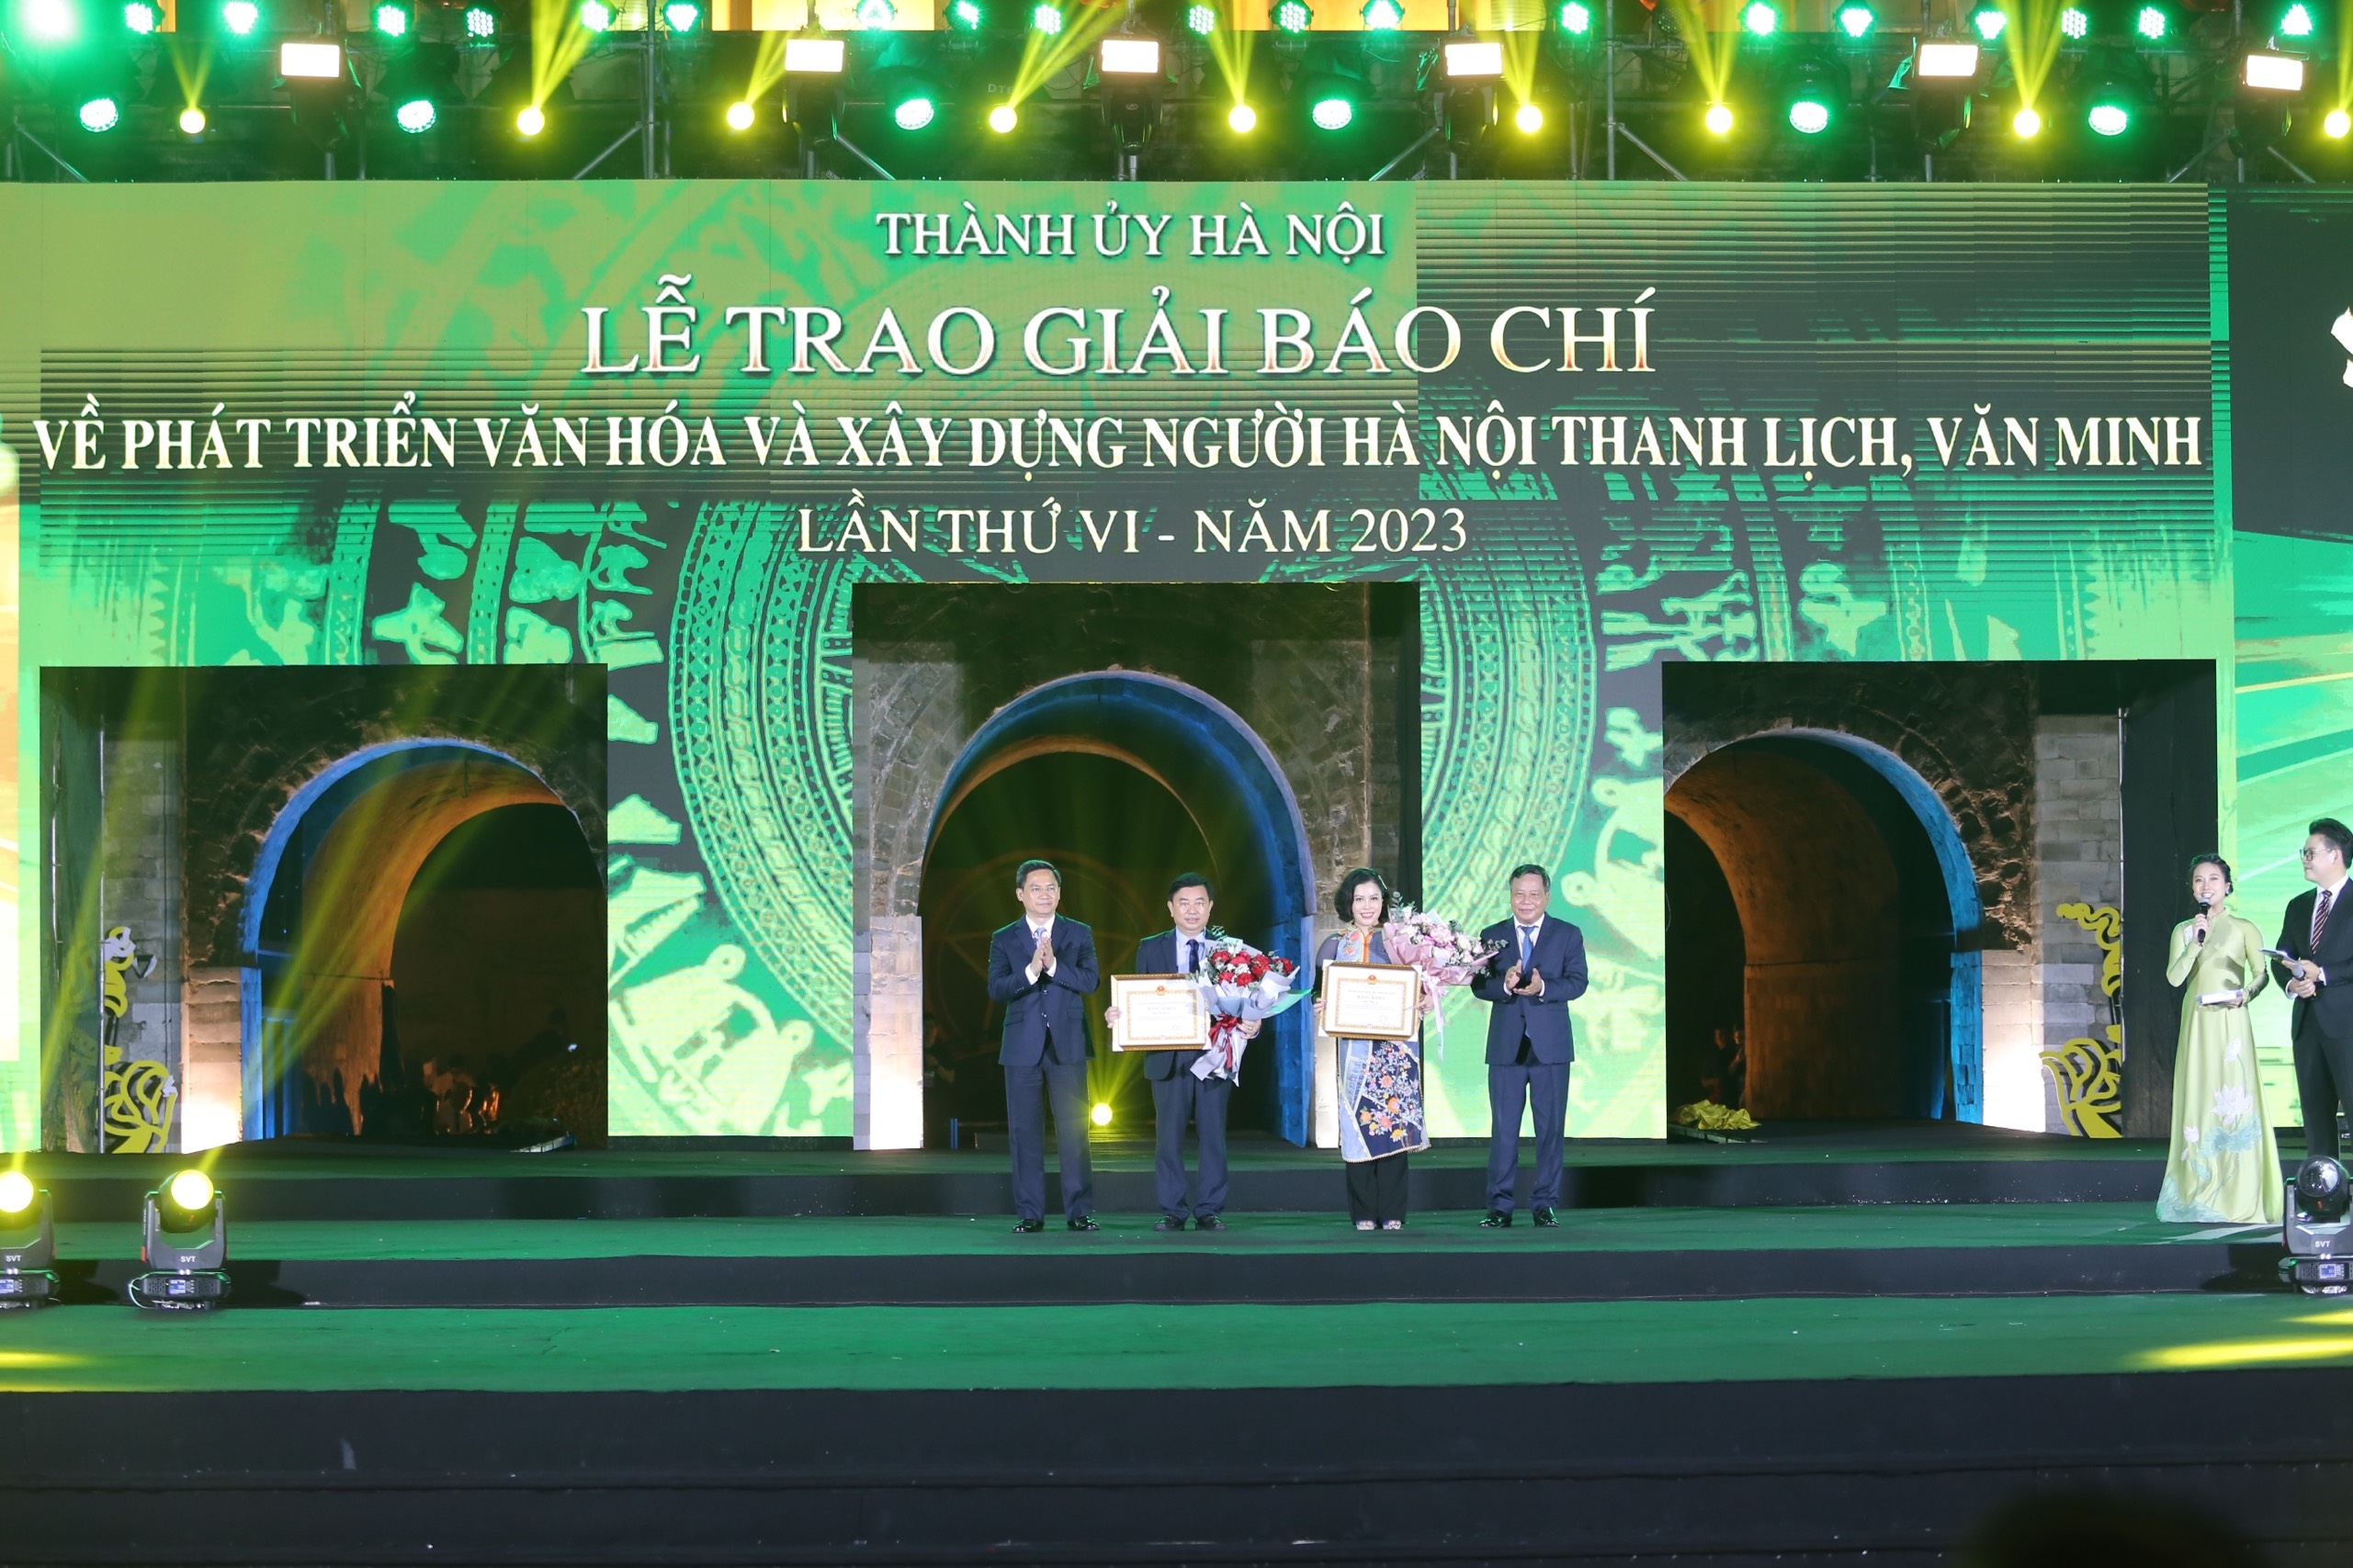 Báo Tuổi trẻ Thủ đô đoạt 2 giải báo chí về văn hóa người Hà Nội